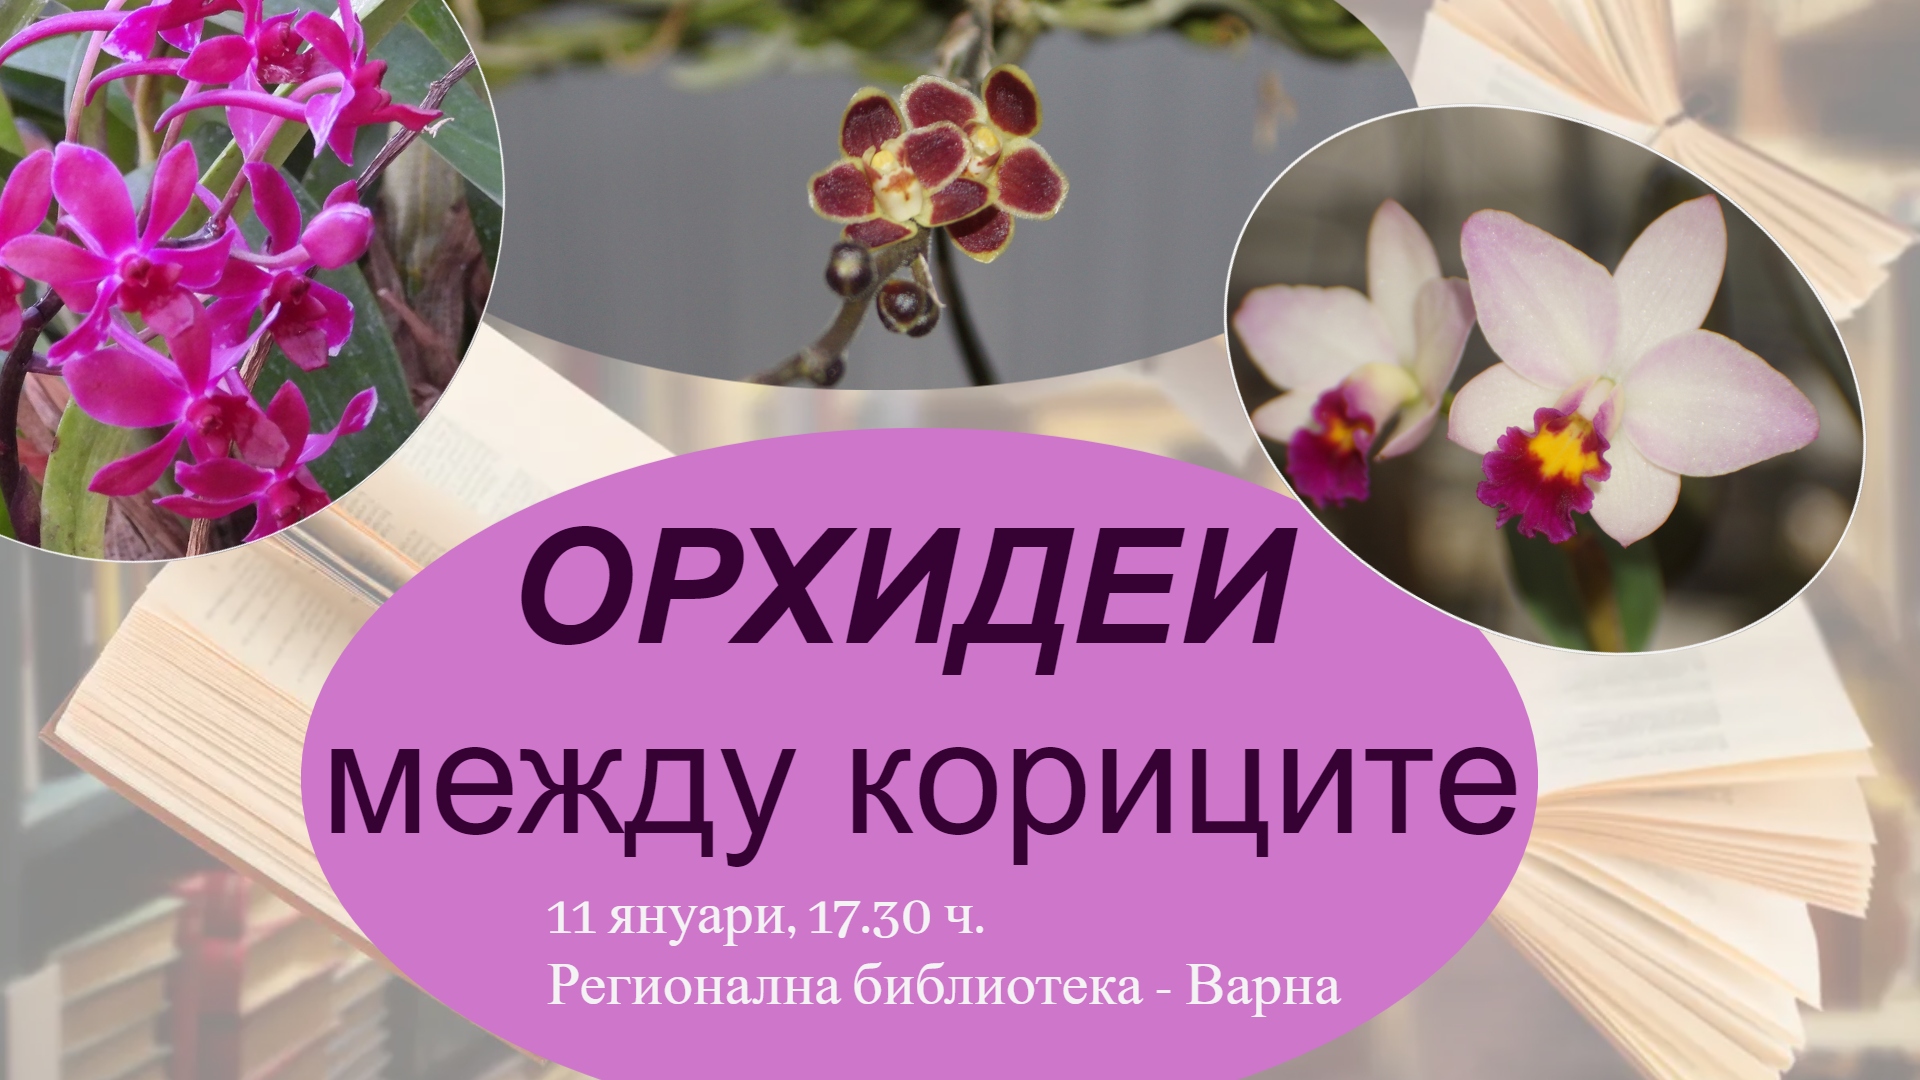 Изложба “Орхидеи между кориците”